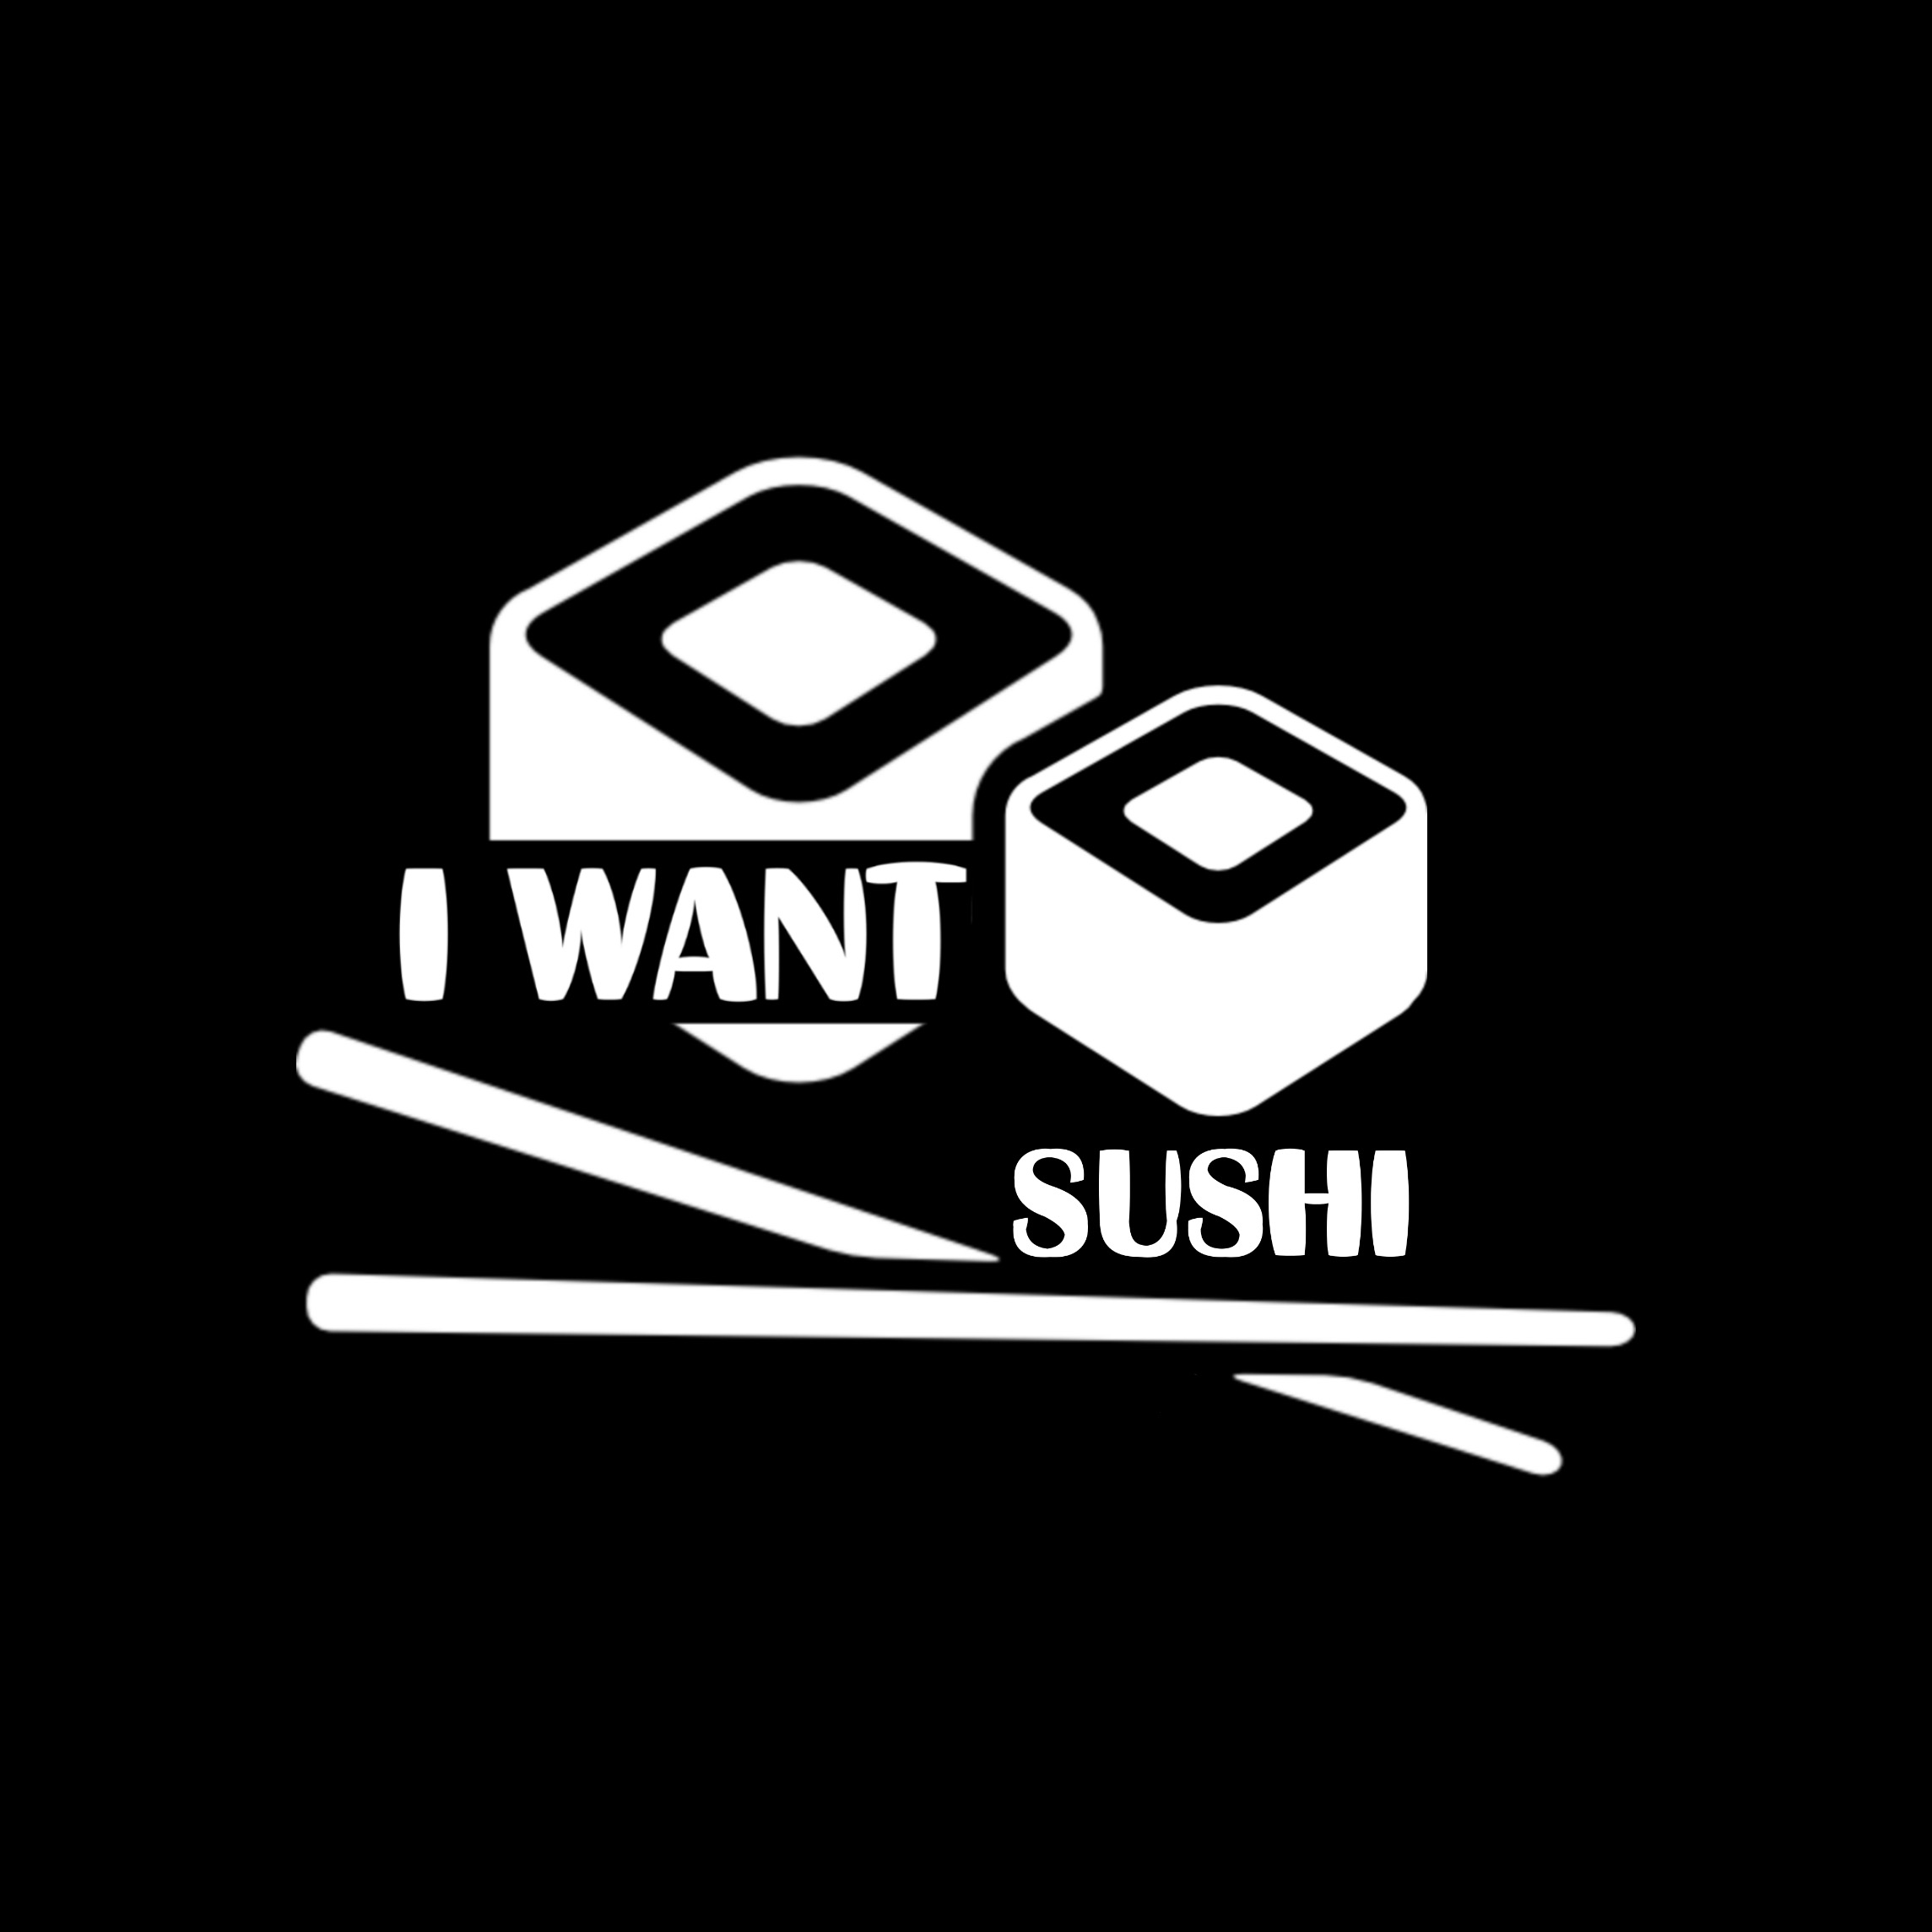 I want sushi